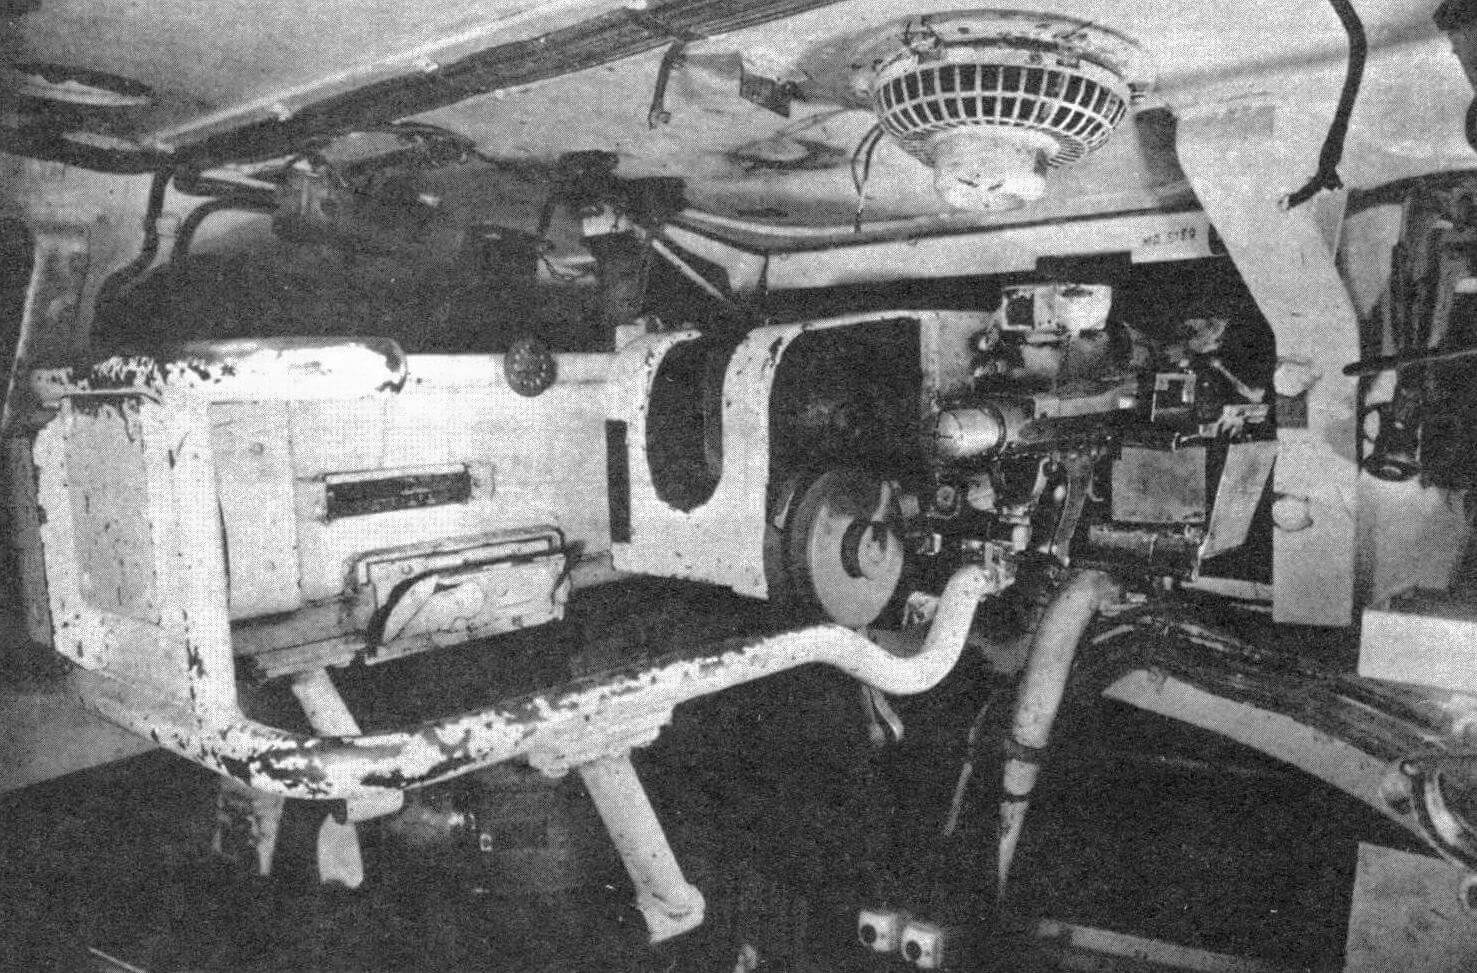 Интерьер башни танка Pz.IV Ausf.E. Хорошо видны казенная часть пушки, спаренный пулемет, ограждение пушки и башенный вентилятор